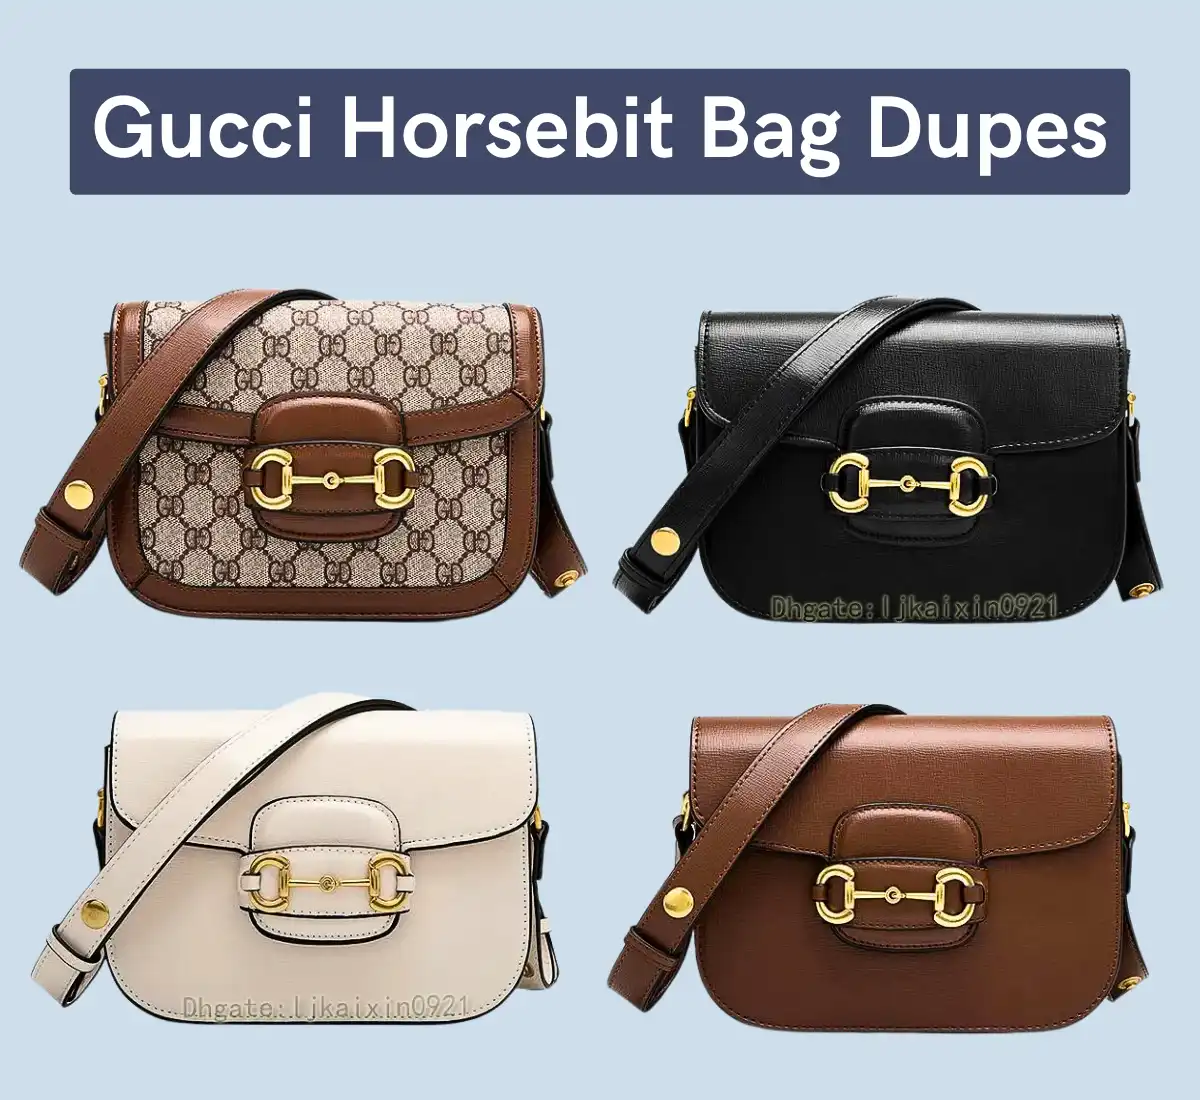 Gucci horsebit bag dupe